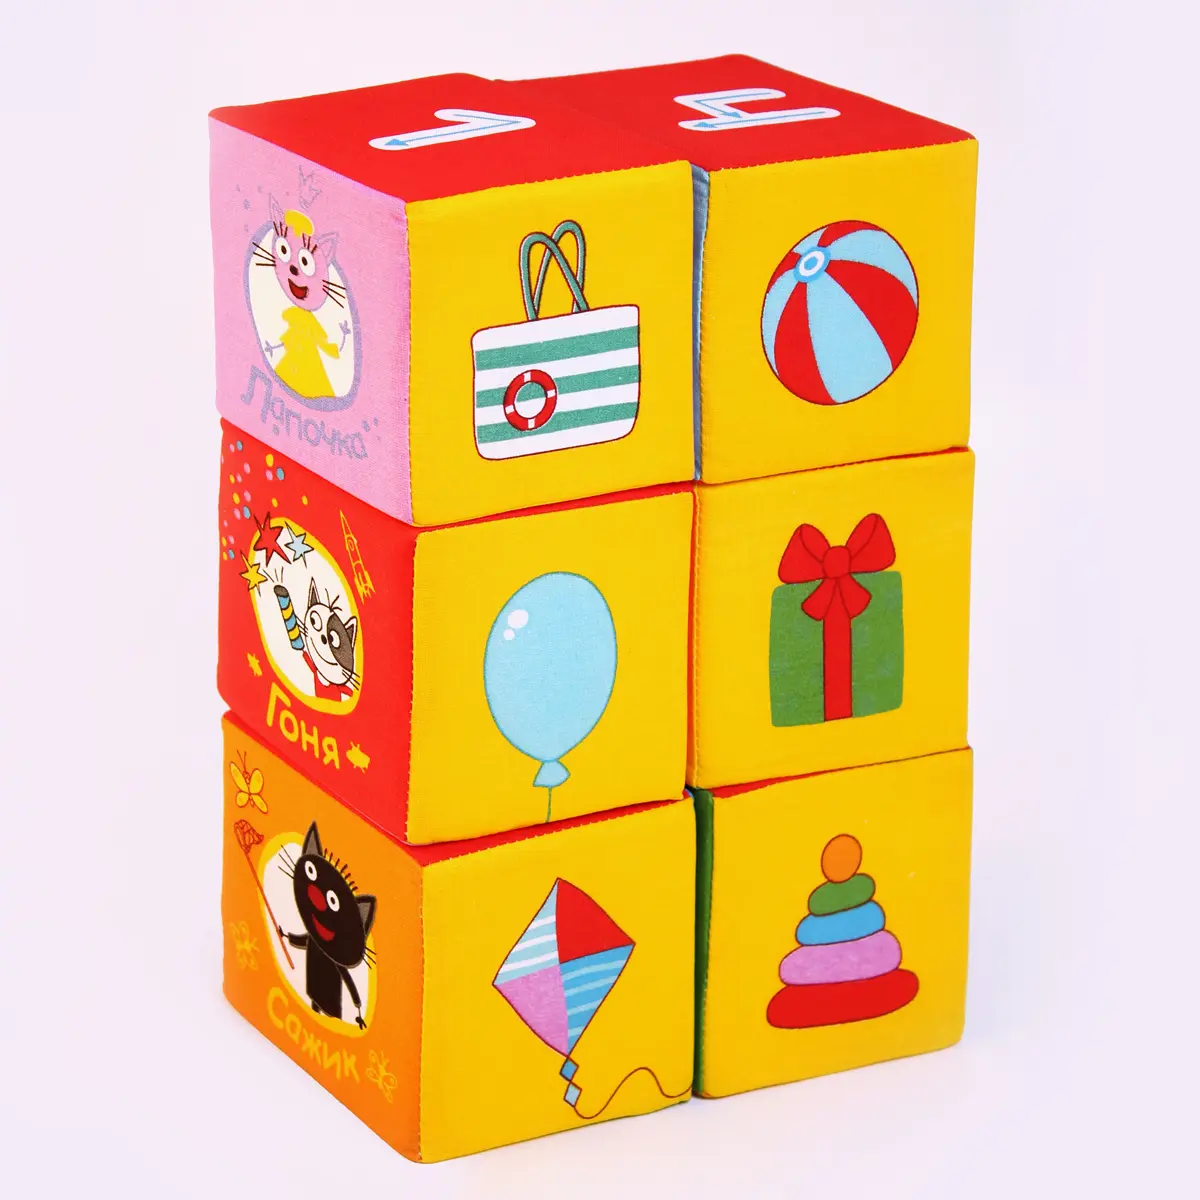 Мягкие кубики "Математика" - фото